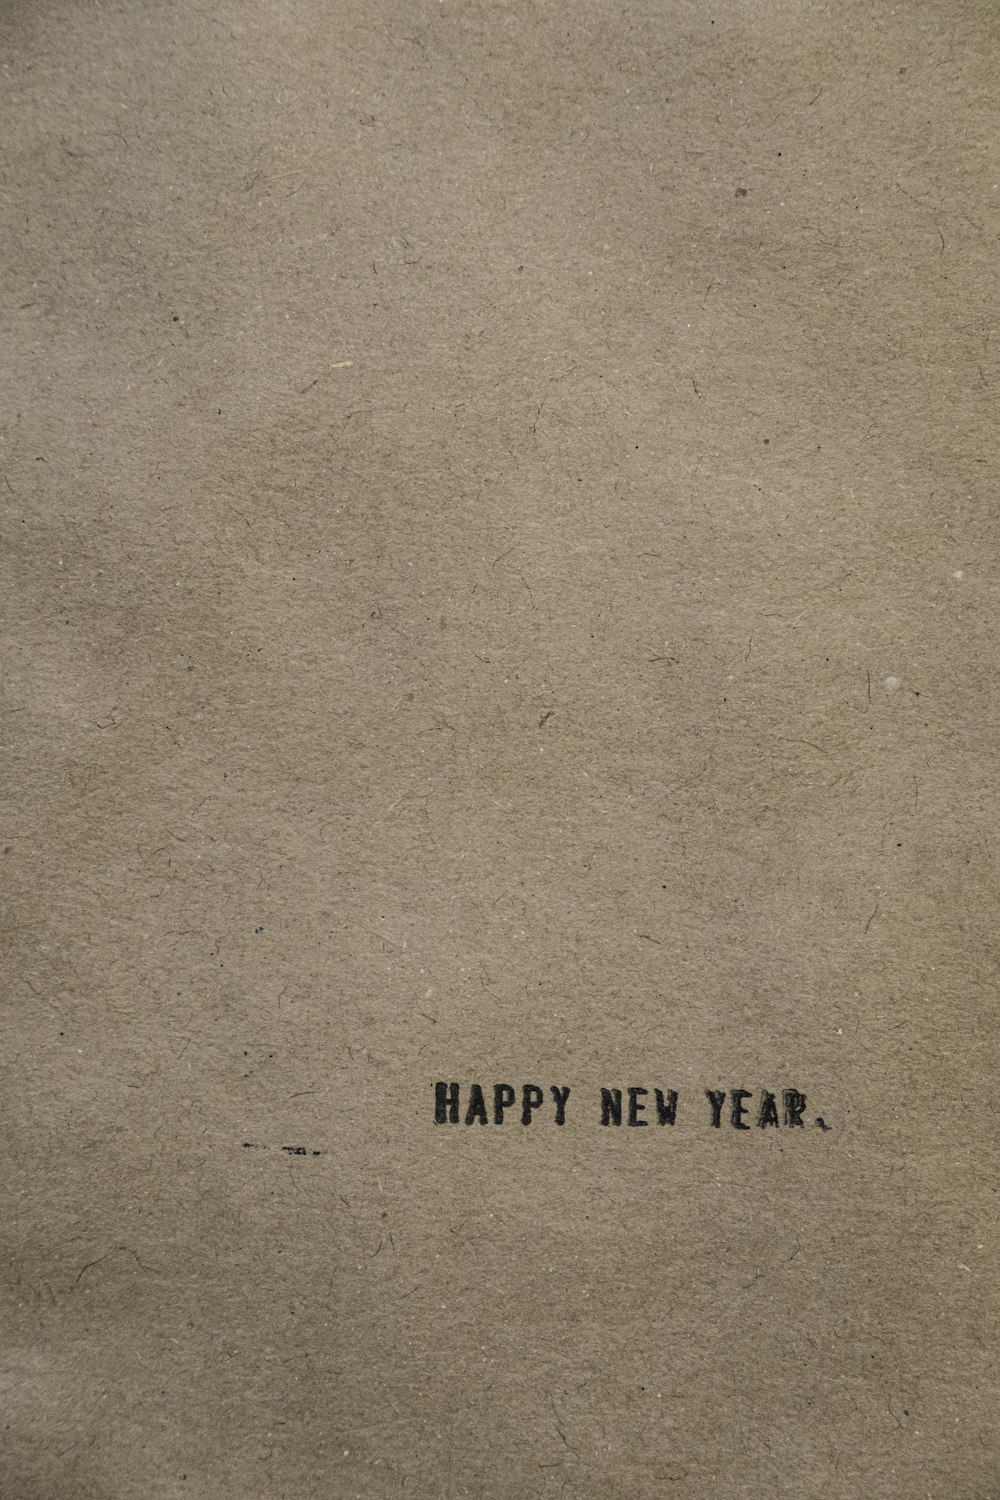 Un pezzo di carta marrone con le parole Happy New Year scritte su di esso